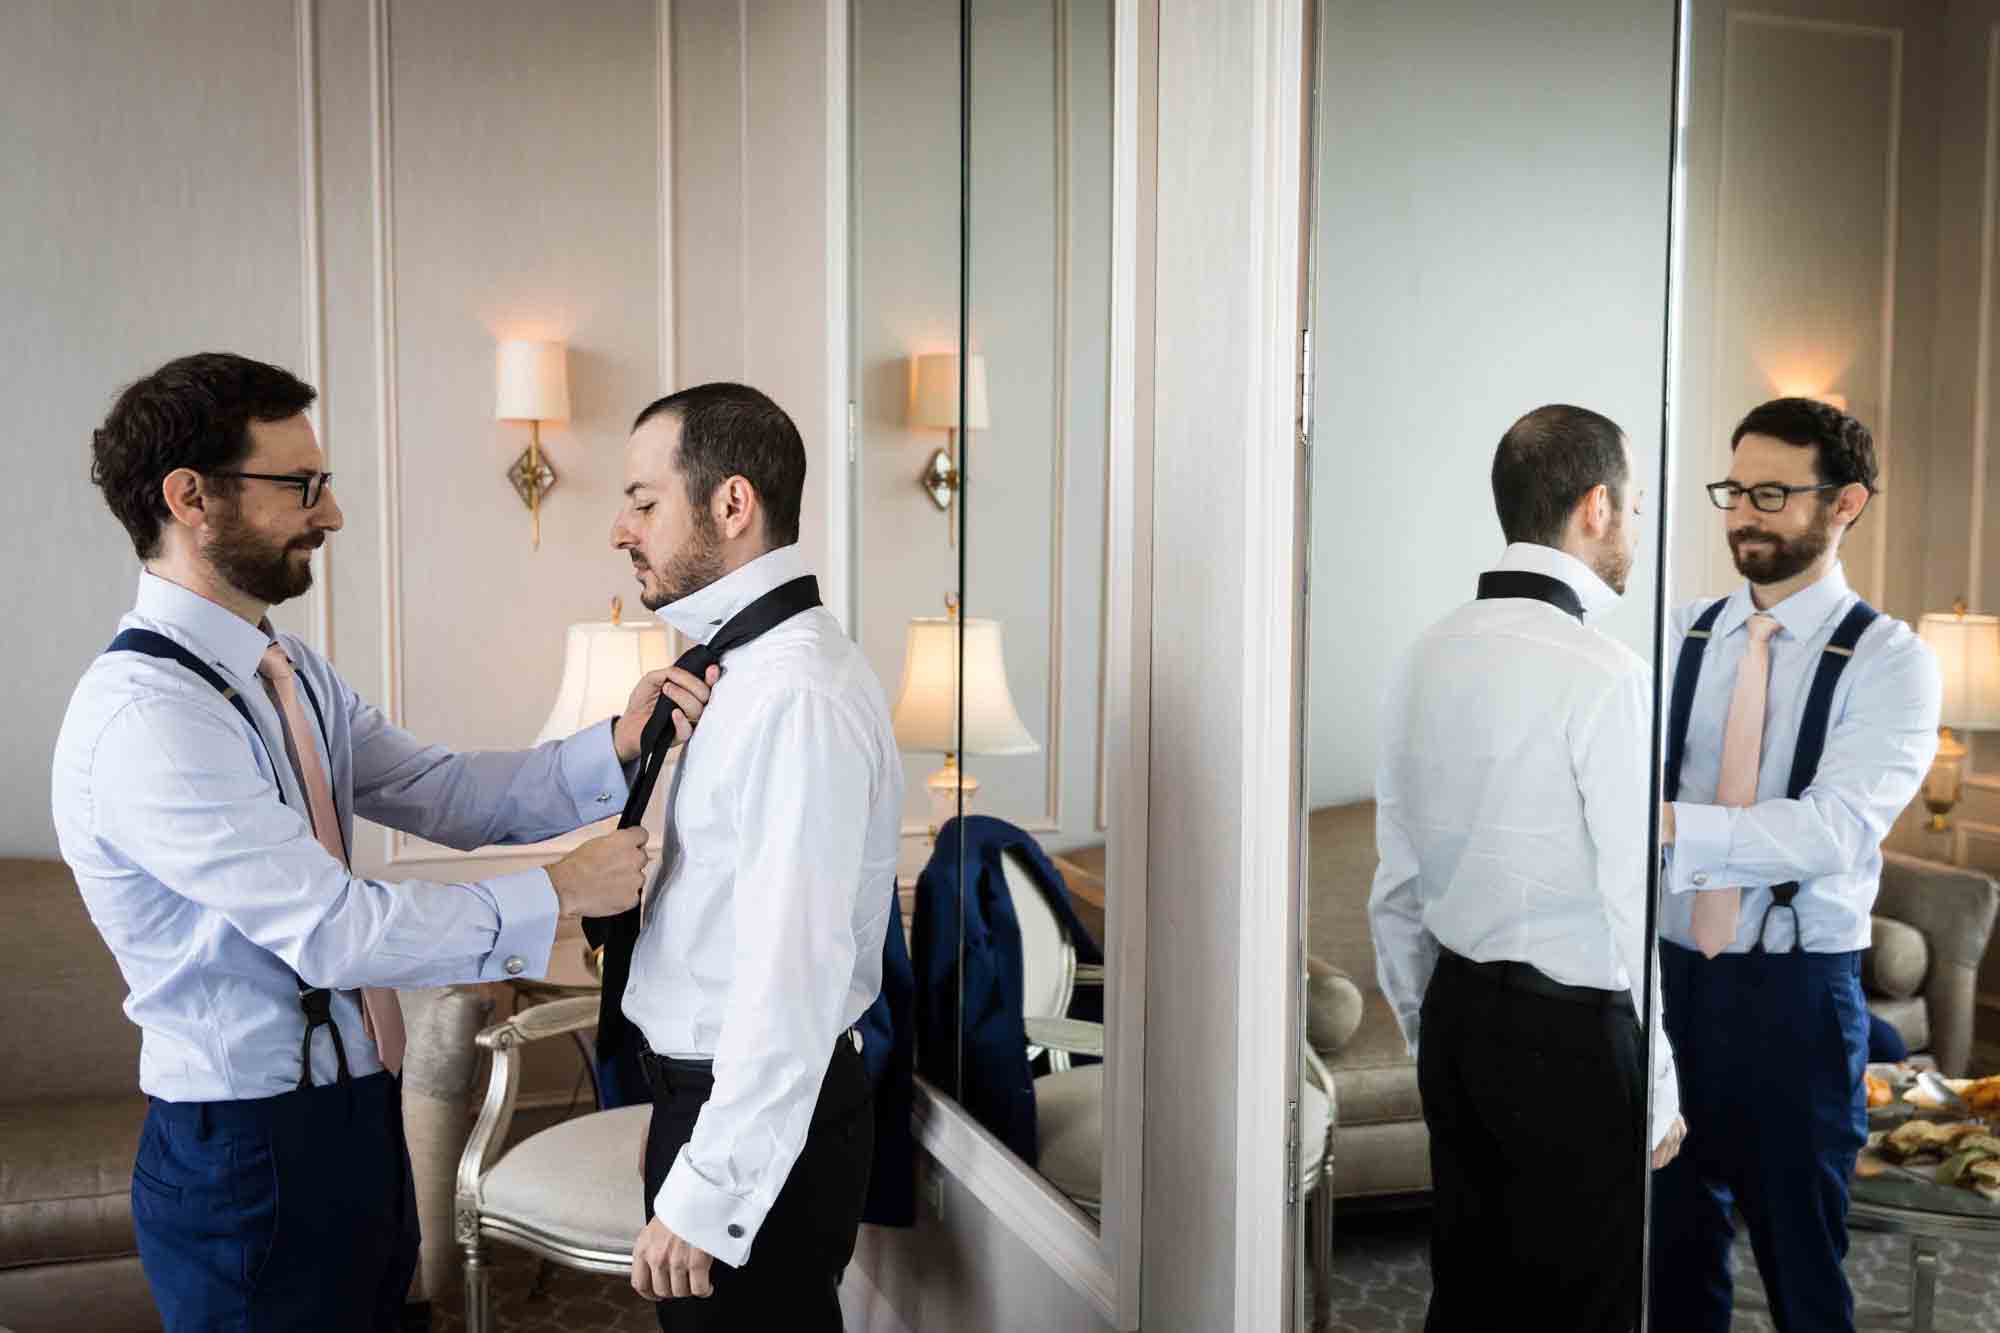 Best man adjusting tie of groom reflected in mirror